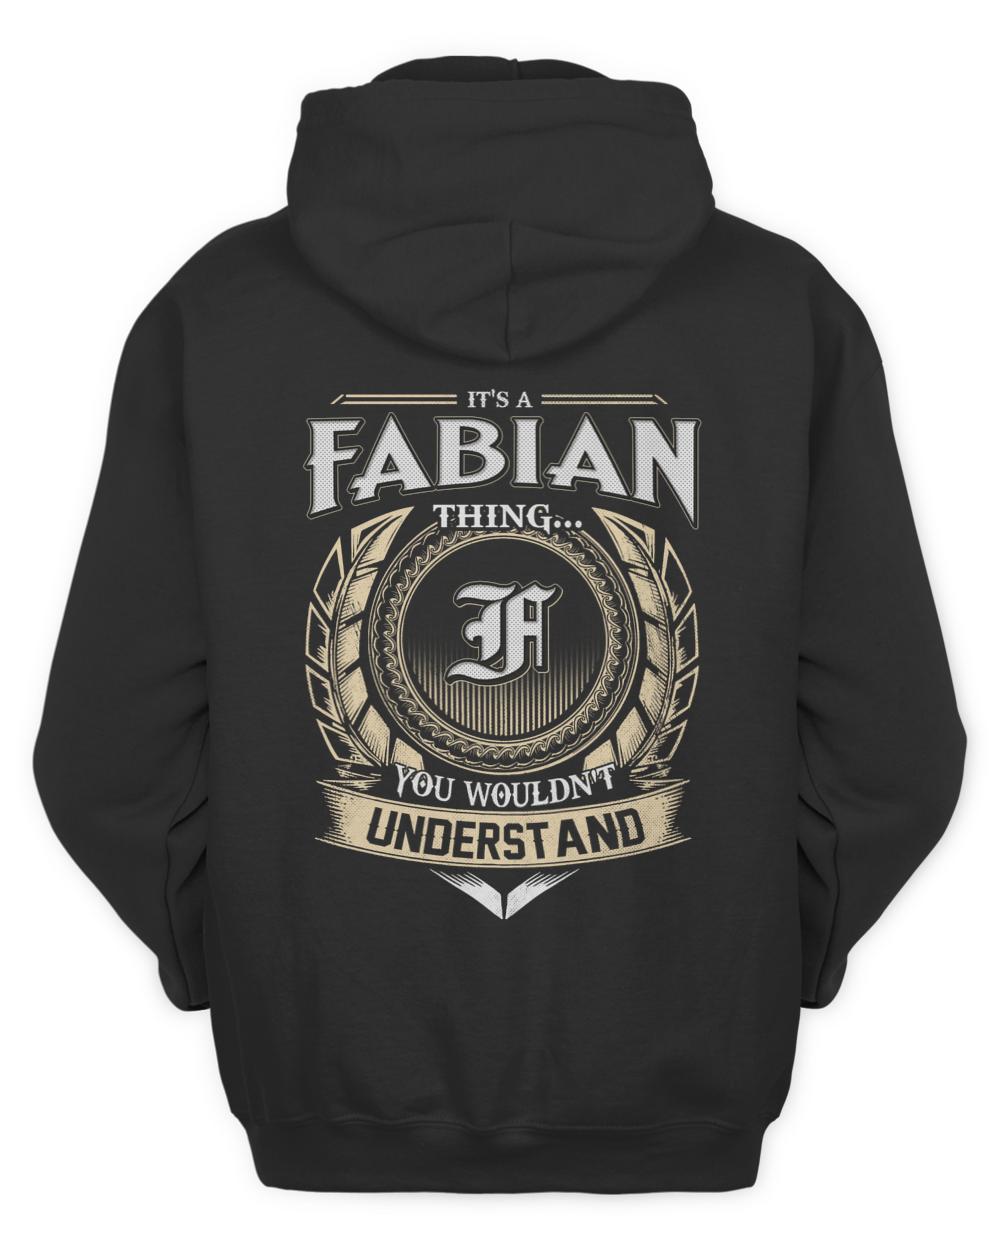 FABIAN-13K-46-01